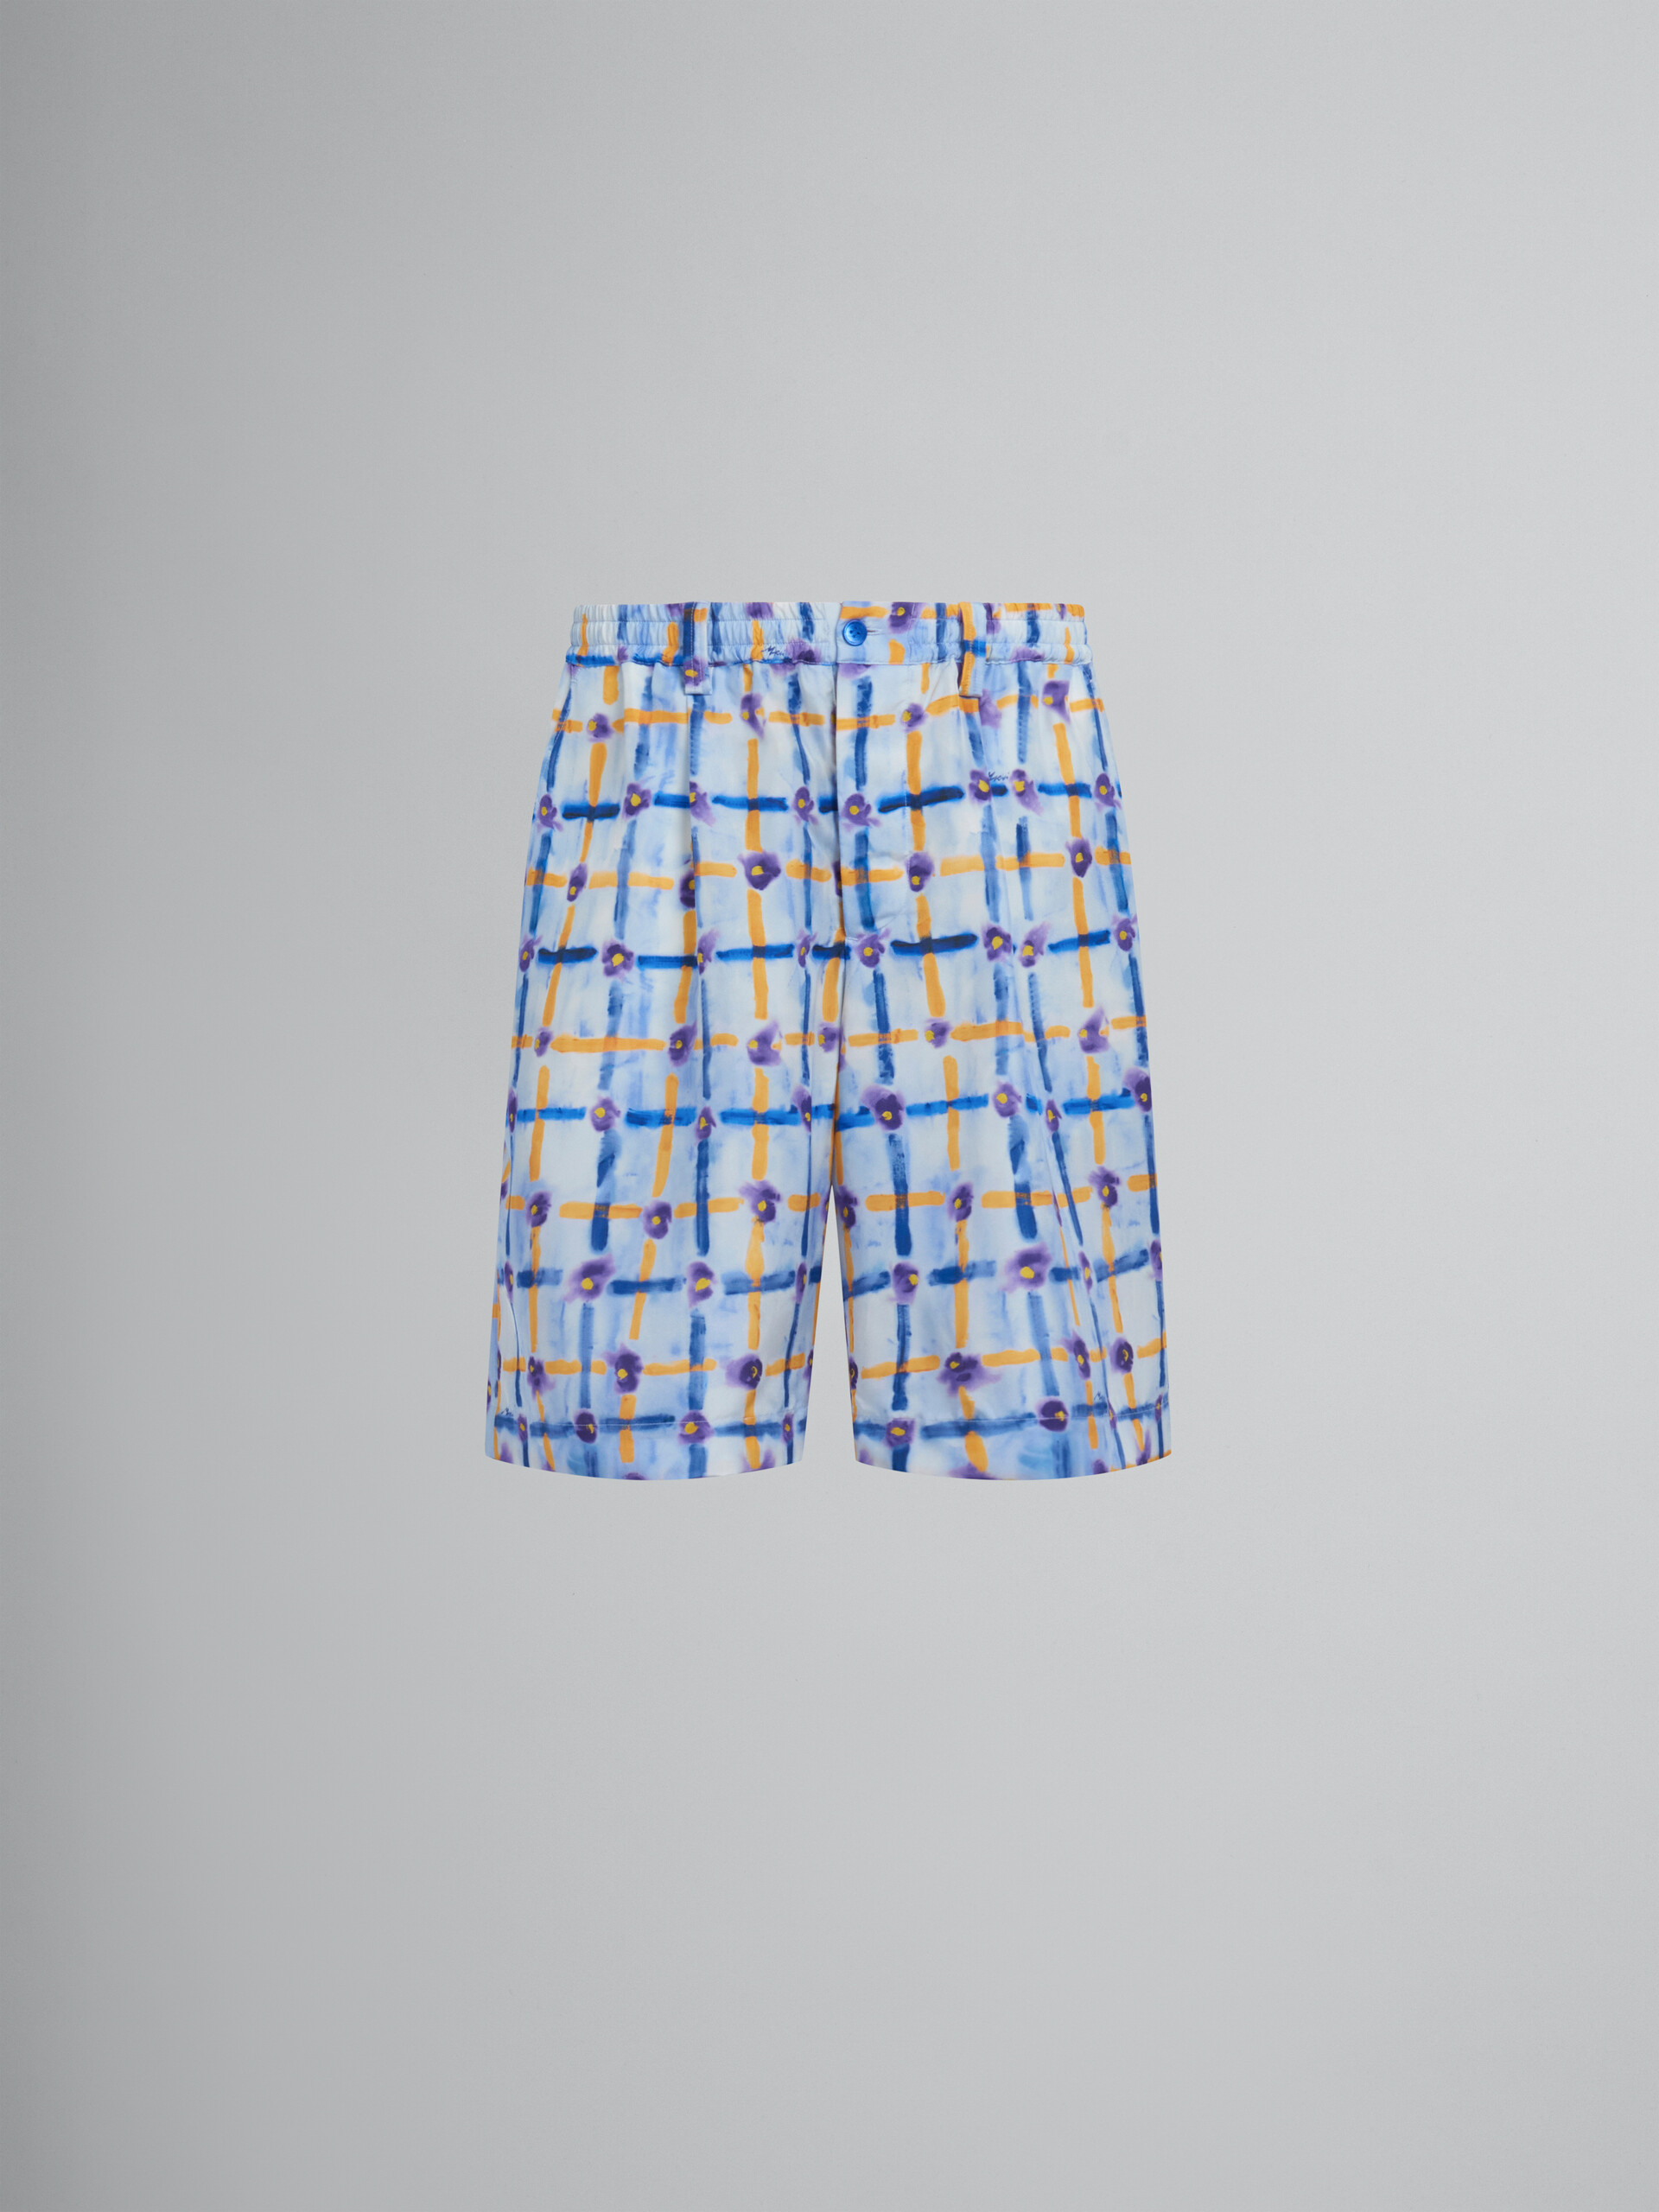 Short à cordon coulissant en soie Habotai bleu clair avec imprimé Saraband - Pantalons - Image 1